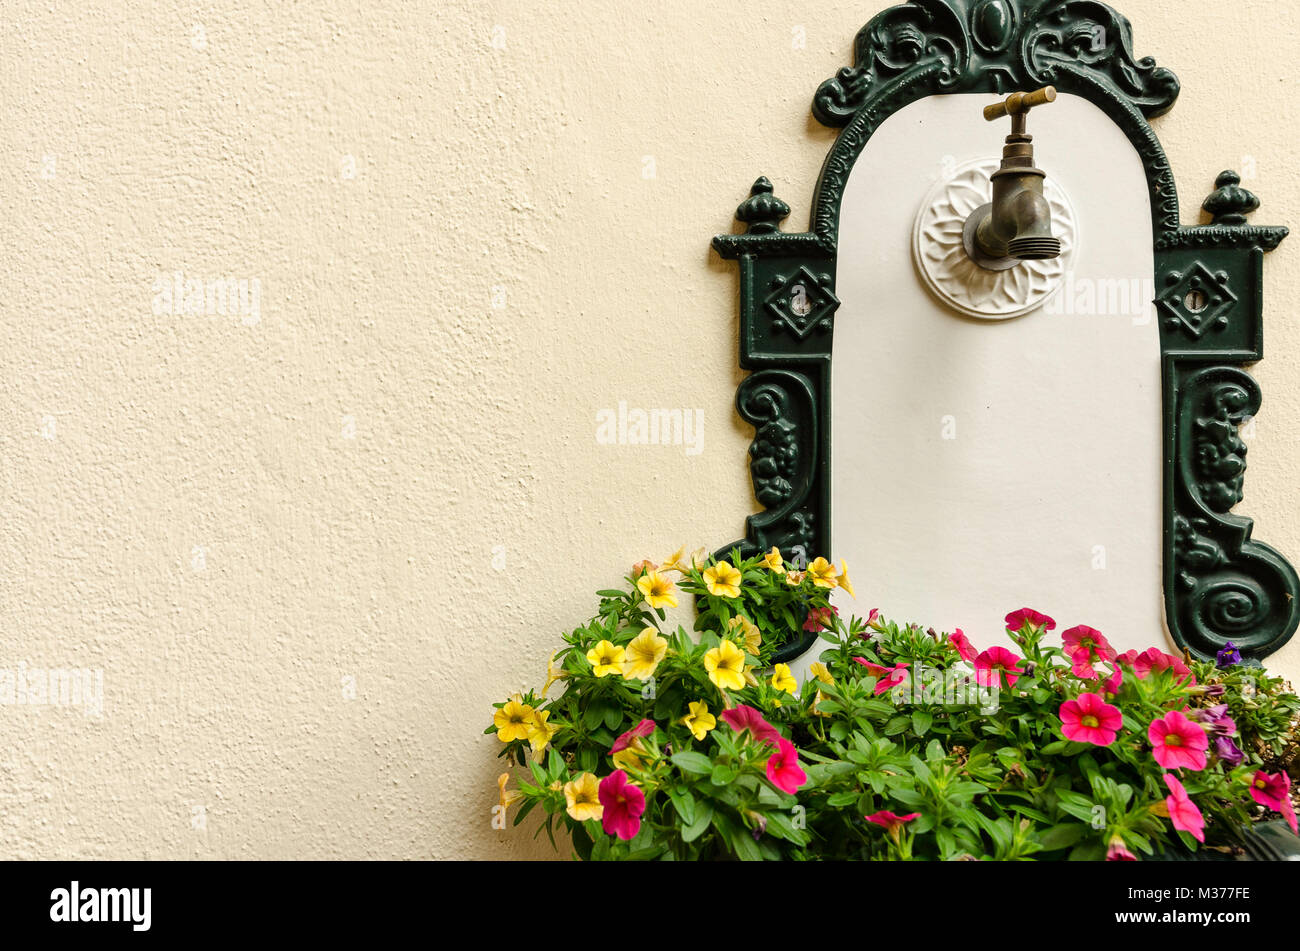 Eine antike verzierten Brunnen mit Gusseisen Einrichtung an der Wand mit  einem bunten Blumen Stockfotografie - Alamy